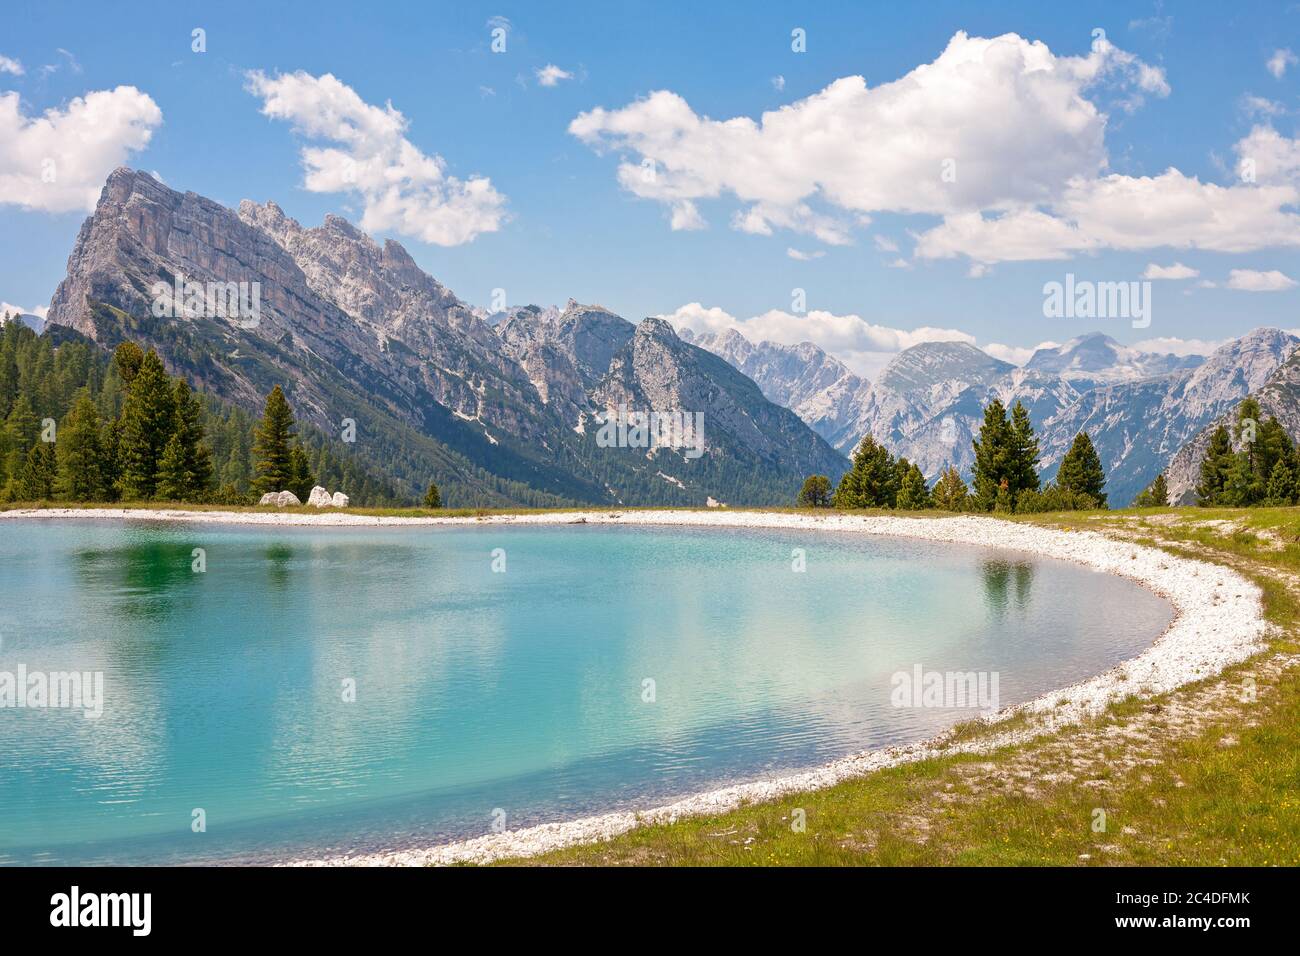 Lac turquoise près du pic de Cresta Bianca dans les Dolomites (Cortina d'Ampezzo, Italie) Banque D'Images